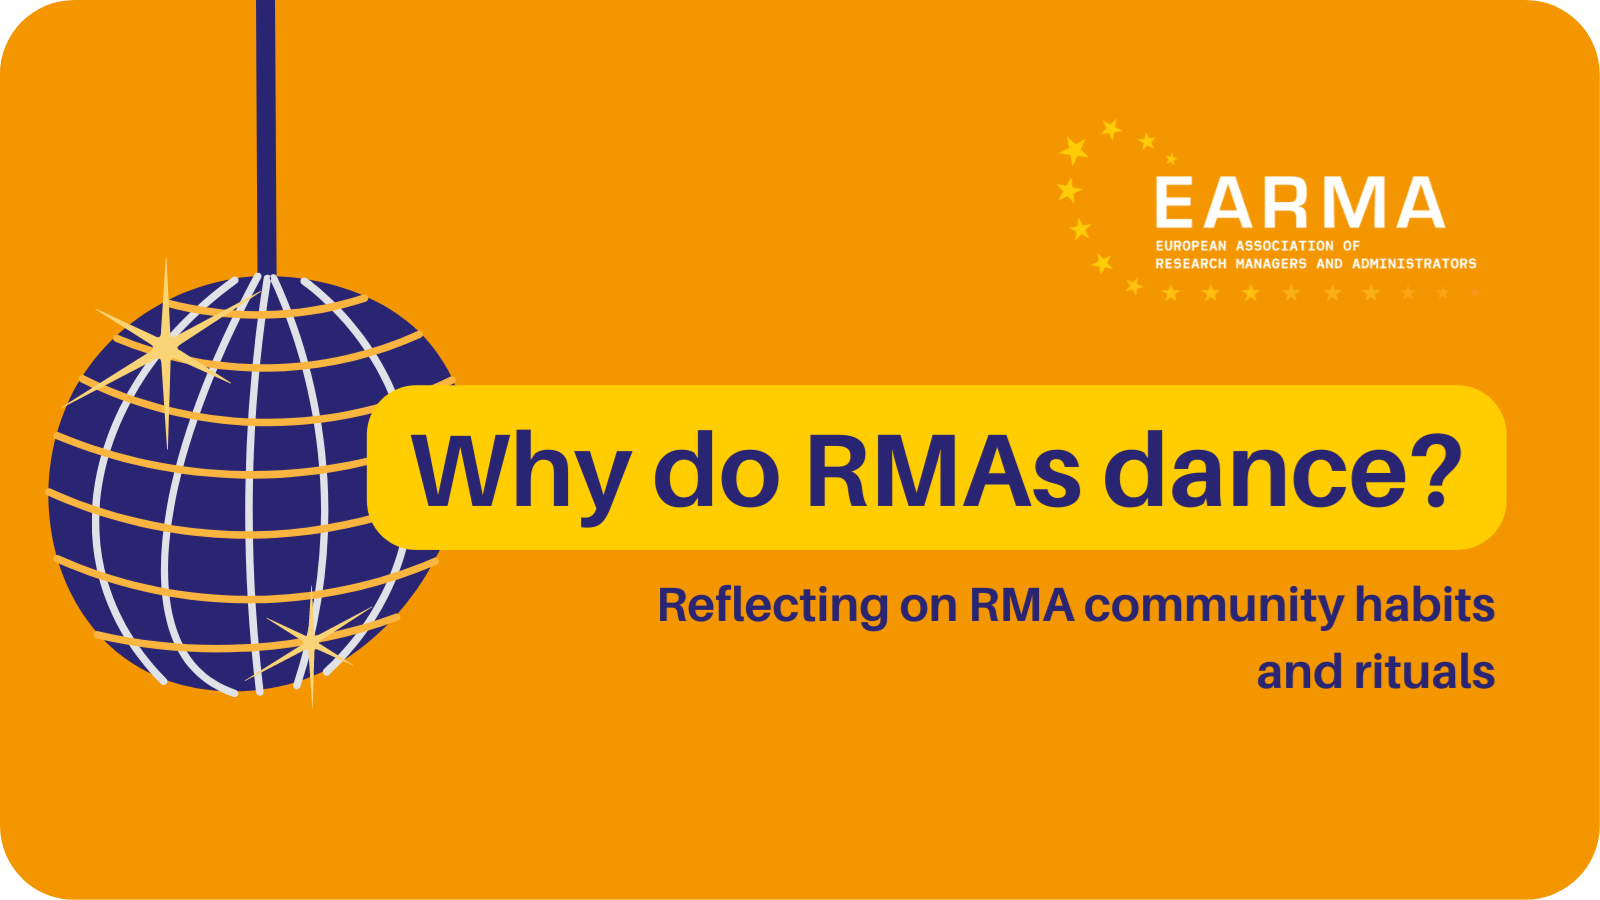 Why do RMAs dance newsletter frame